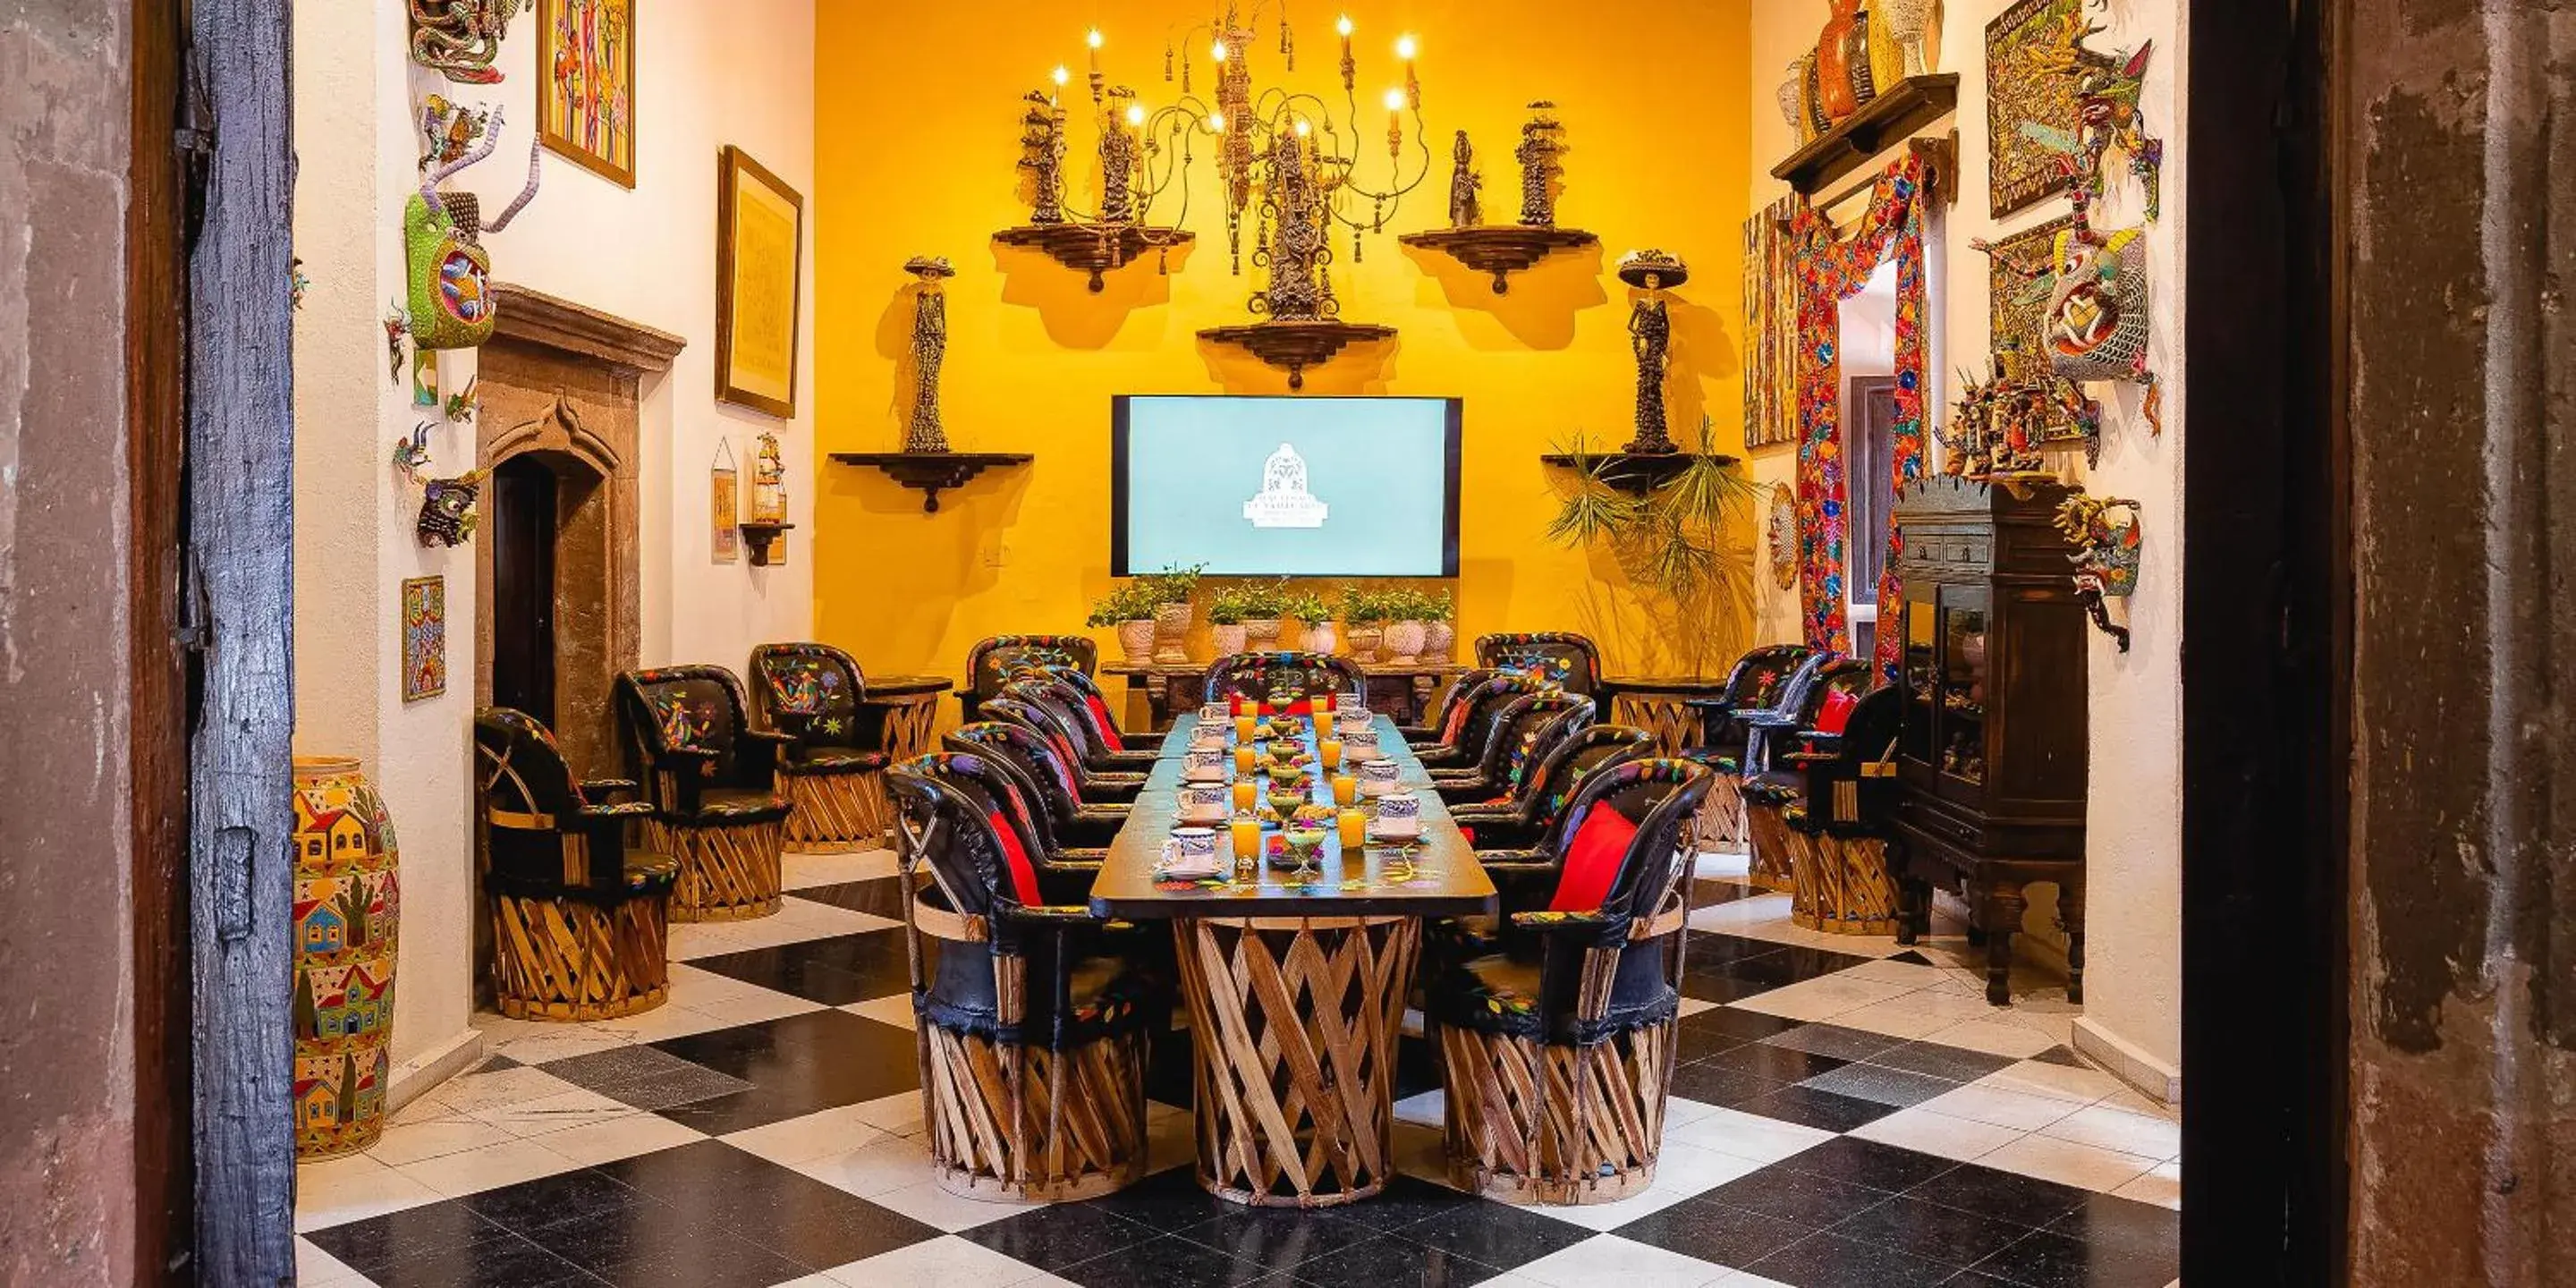 Meeting/conference room, Restaurant/Places to Eat in Hacienda El Santuario San Miguel de Allende